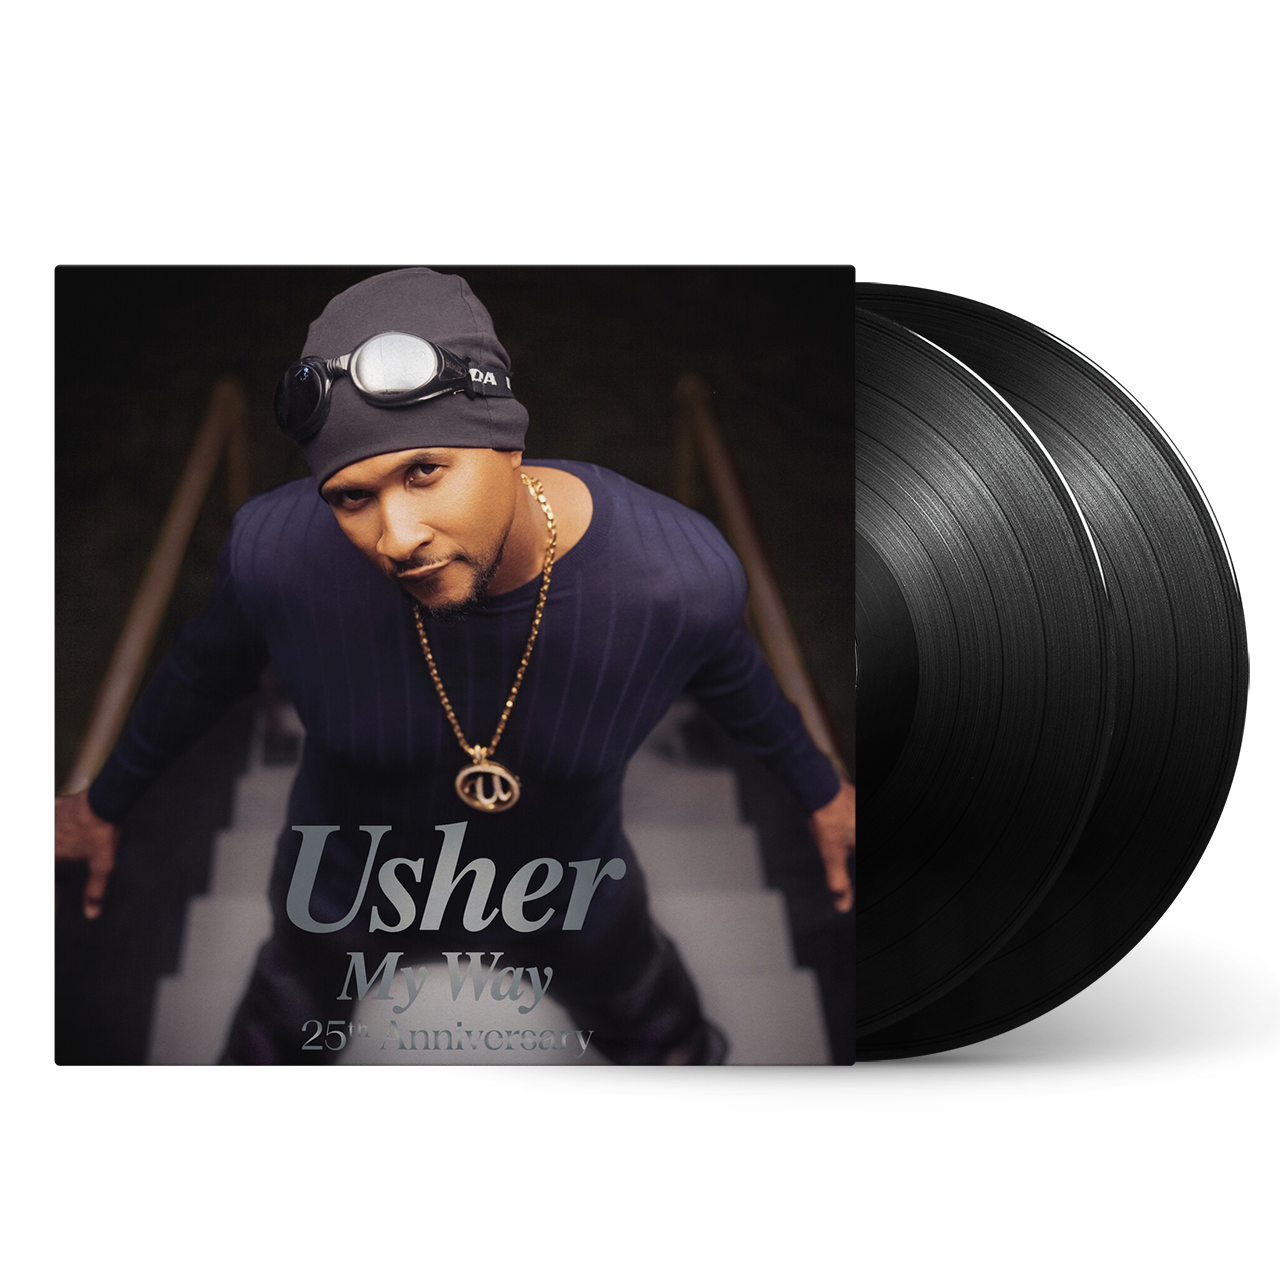 Usher - My Way - 25th Anniversary: Vinyl 2LP